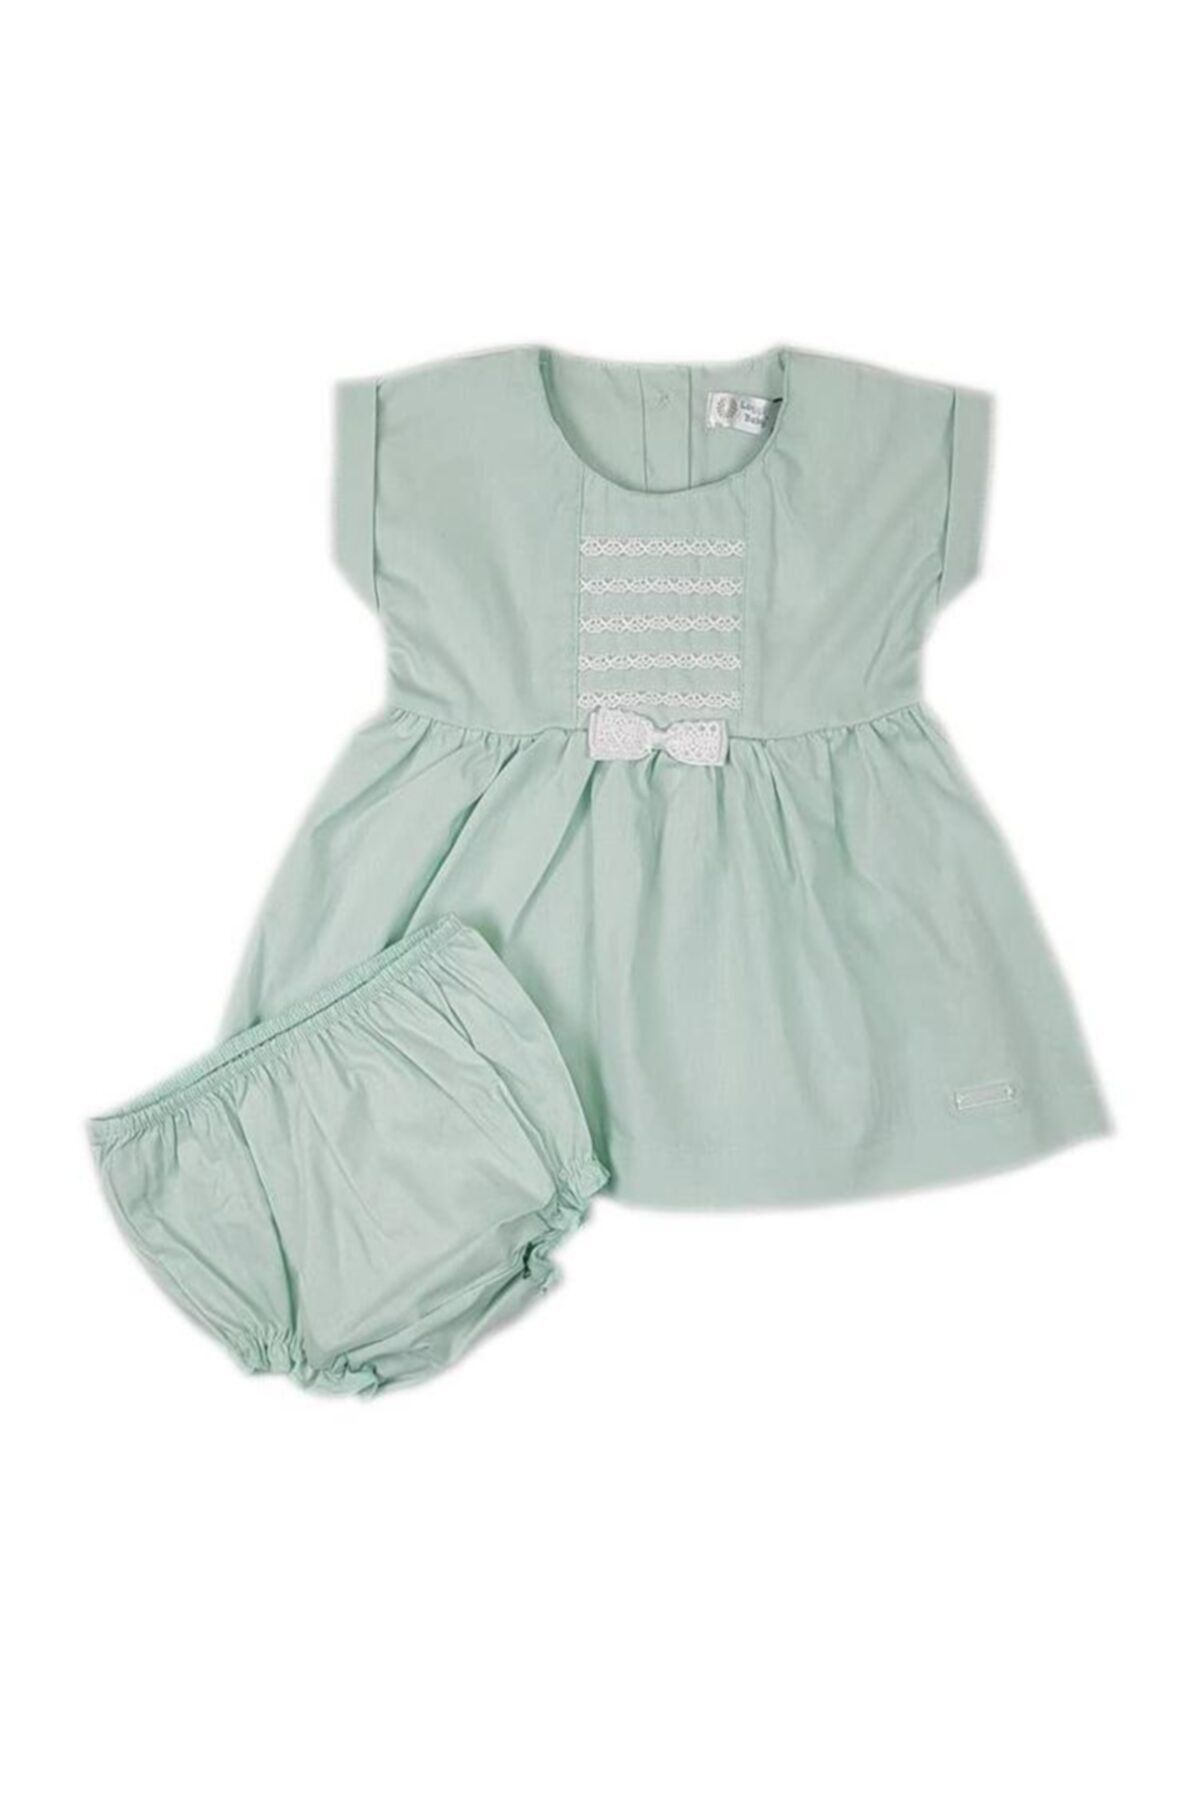 Luggi Baby Kaktüs Yeşili Kısa Kol Ön Tarafta Fiyonk Detaylı Elbise Külot Takım